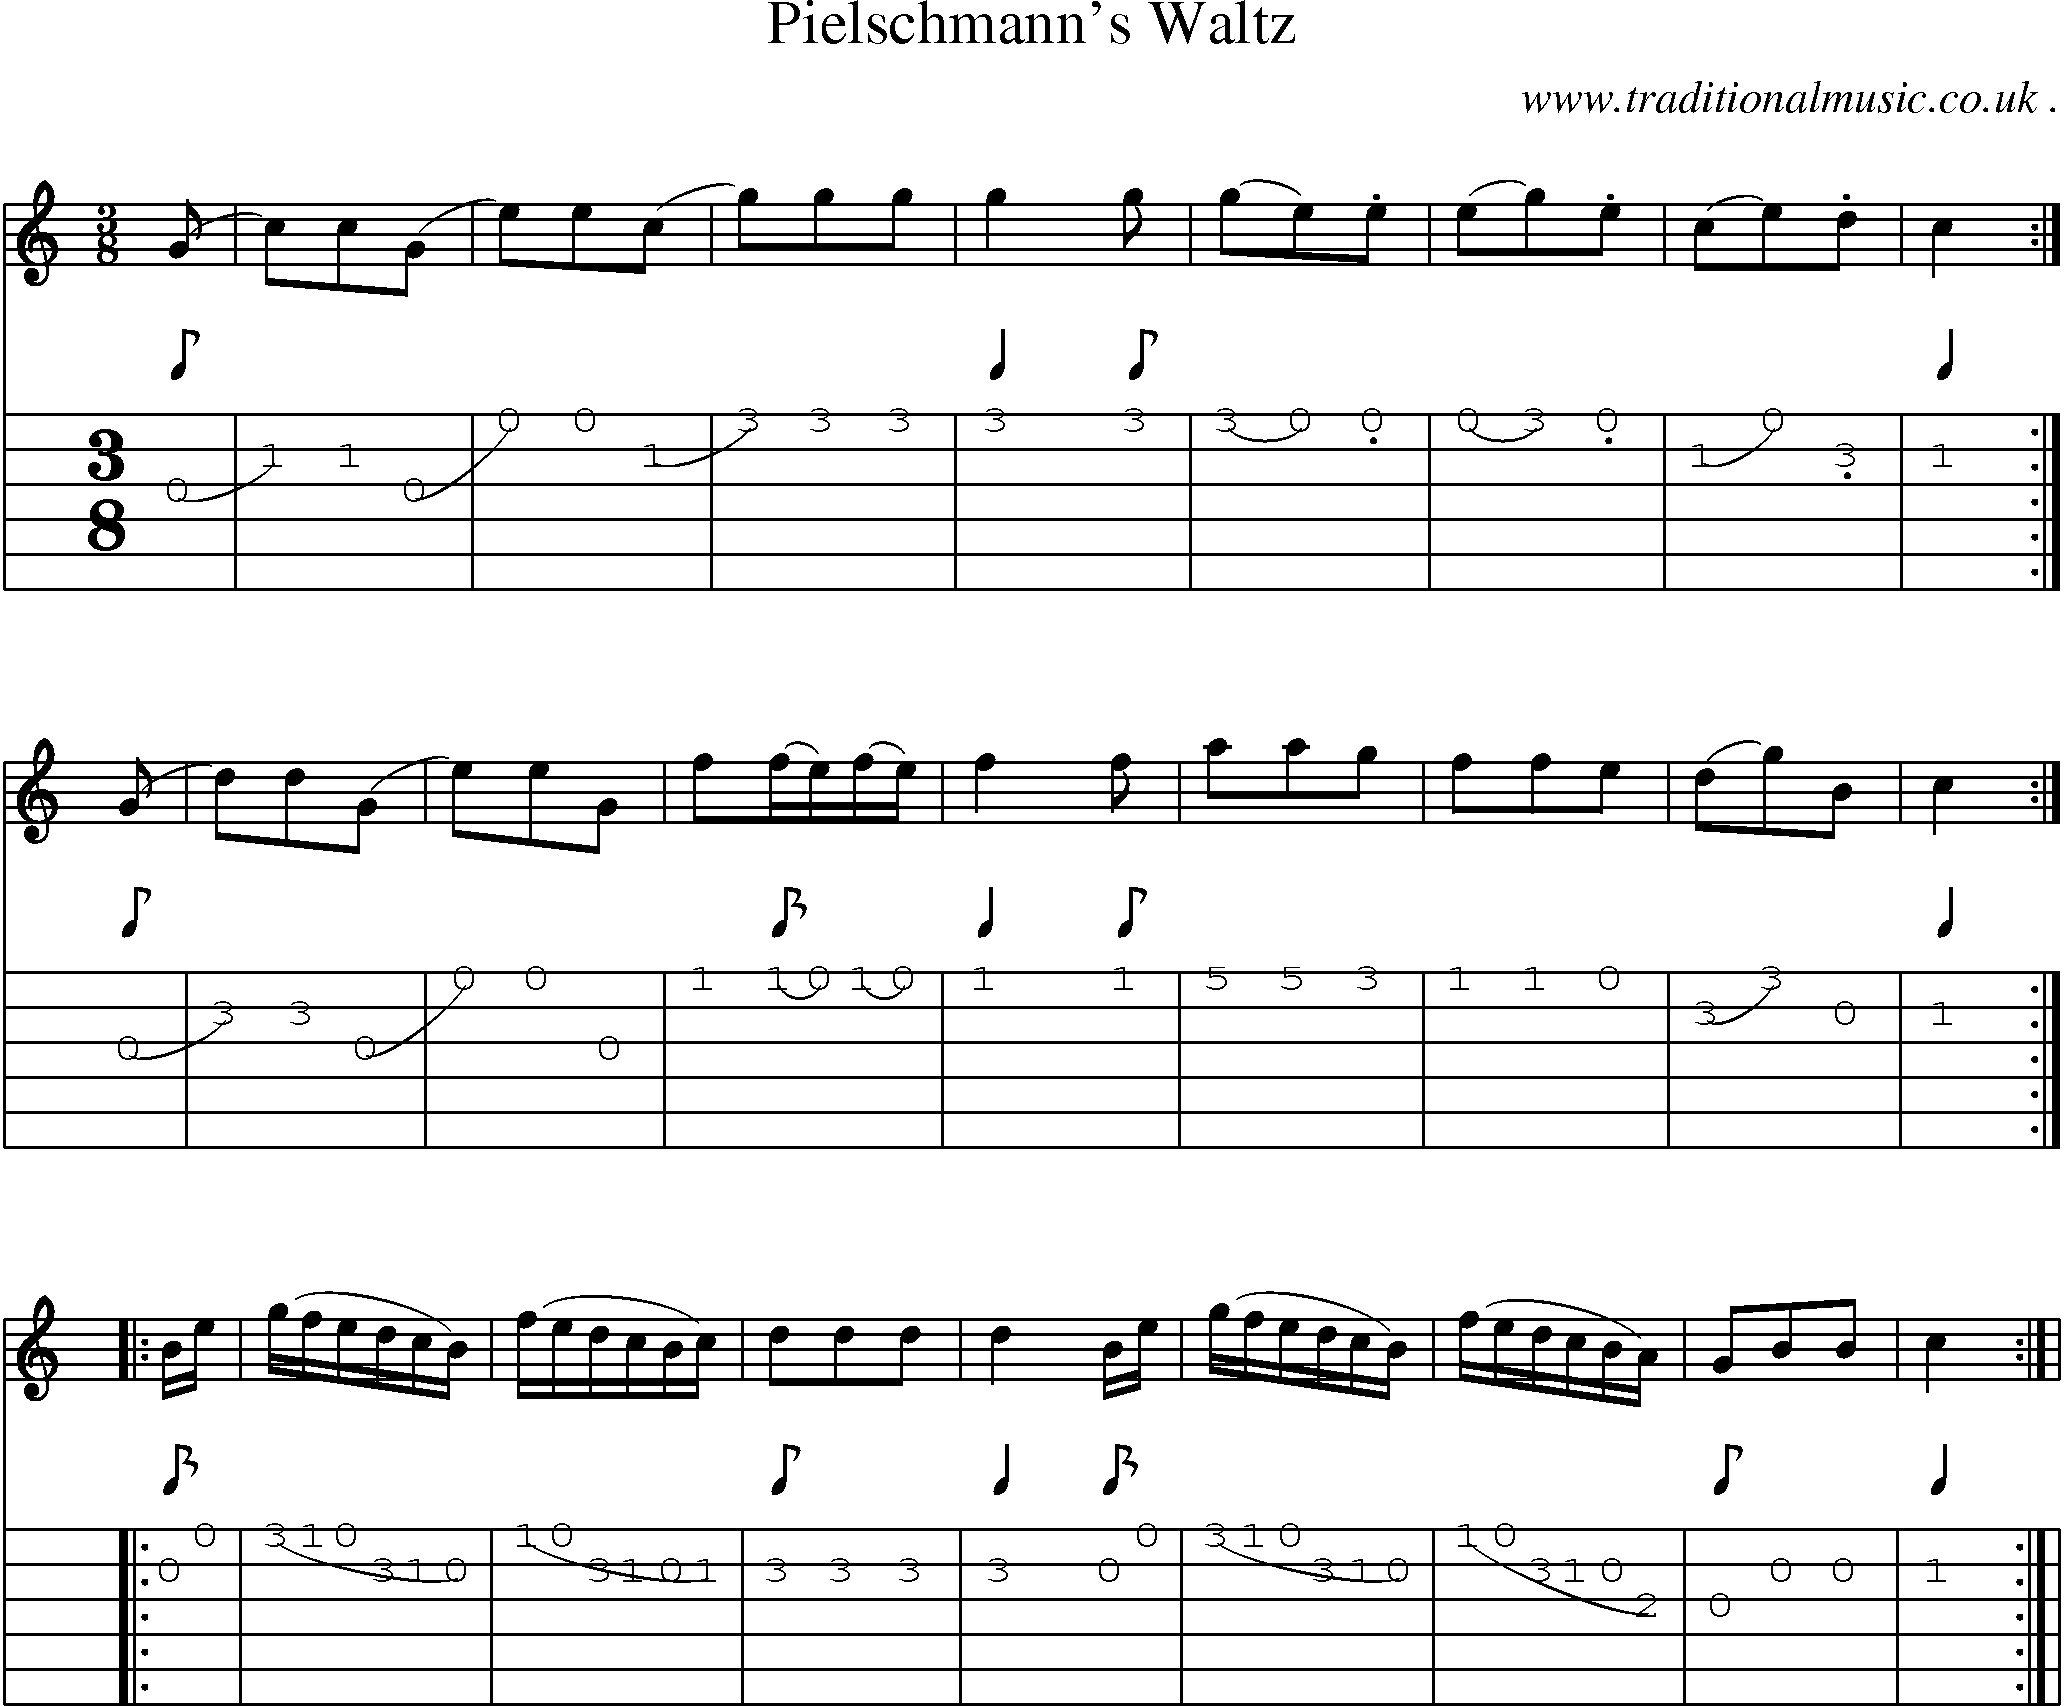 Sheet-Music and Guitar Tabs for Pielschmanns Waltz